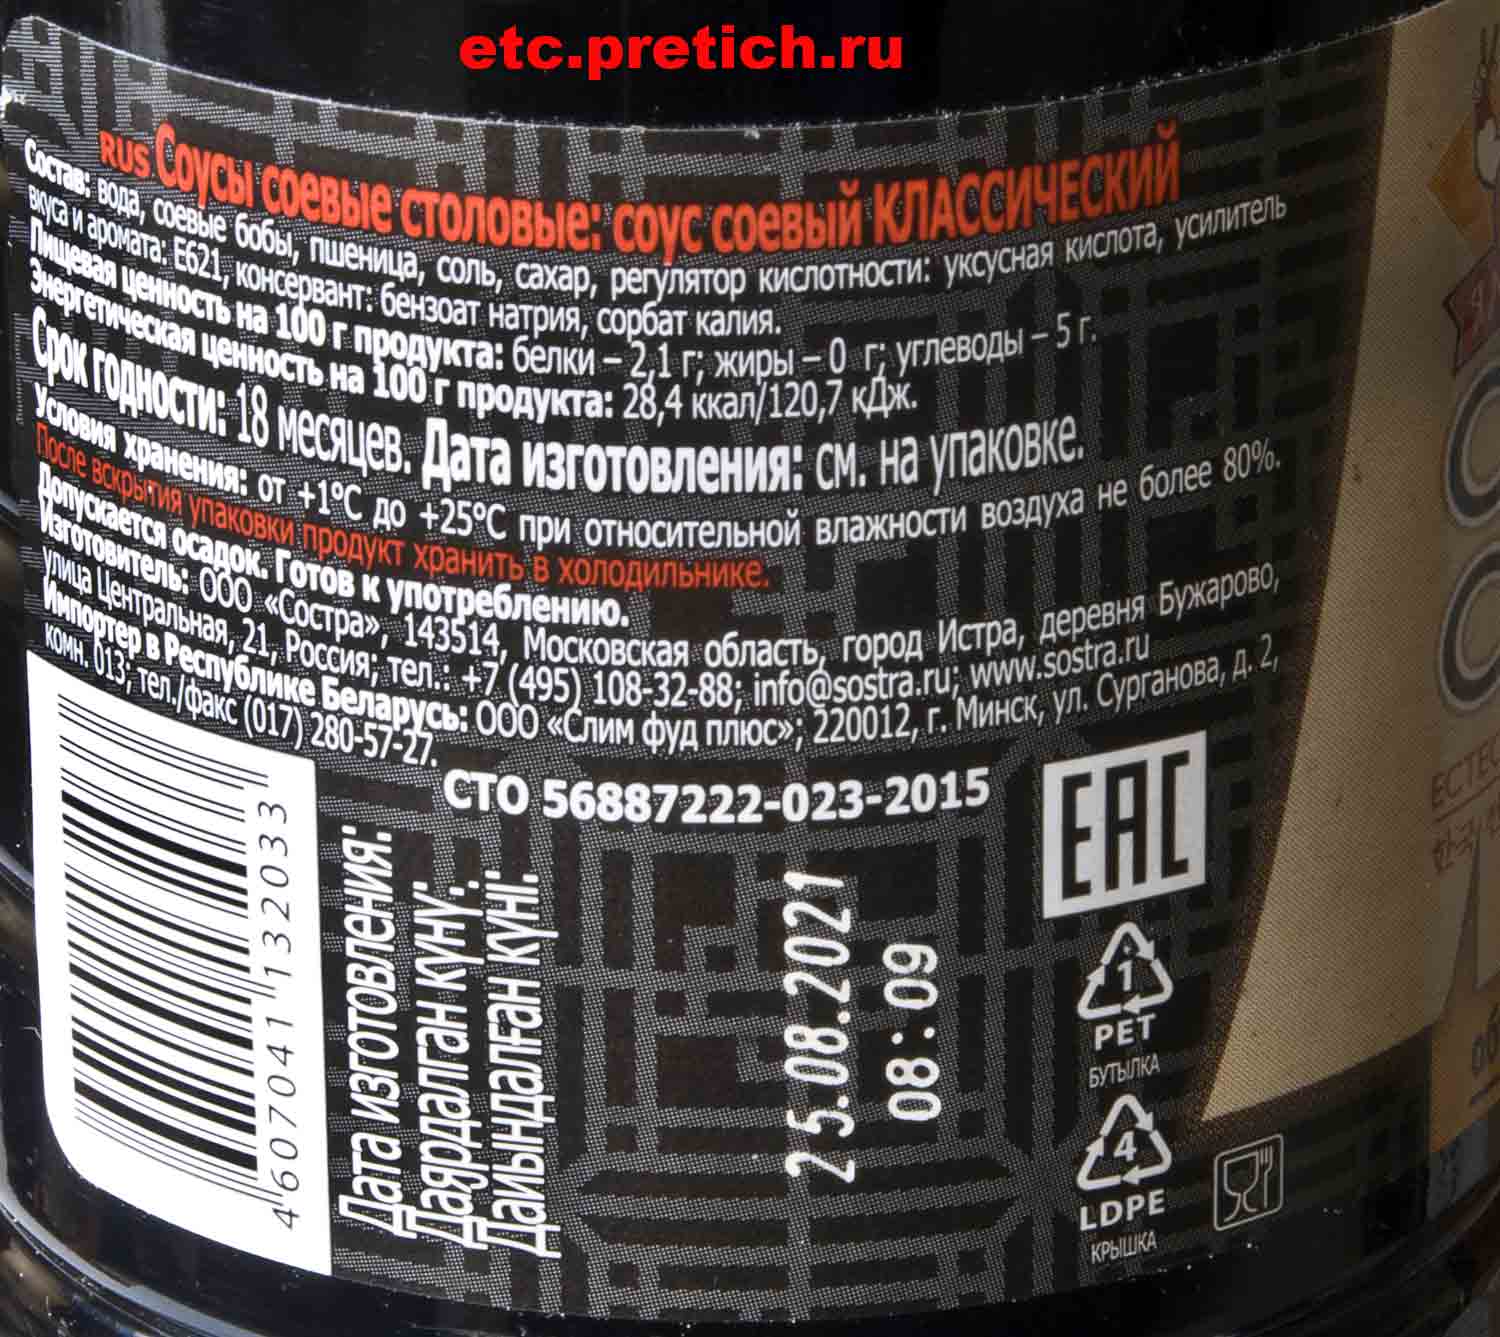 Ямчан соевый соус Классика, дегустация, хороший продукт из России